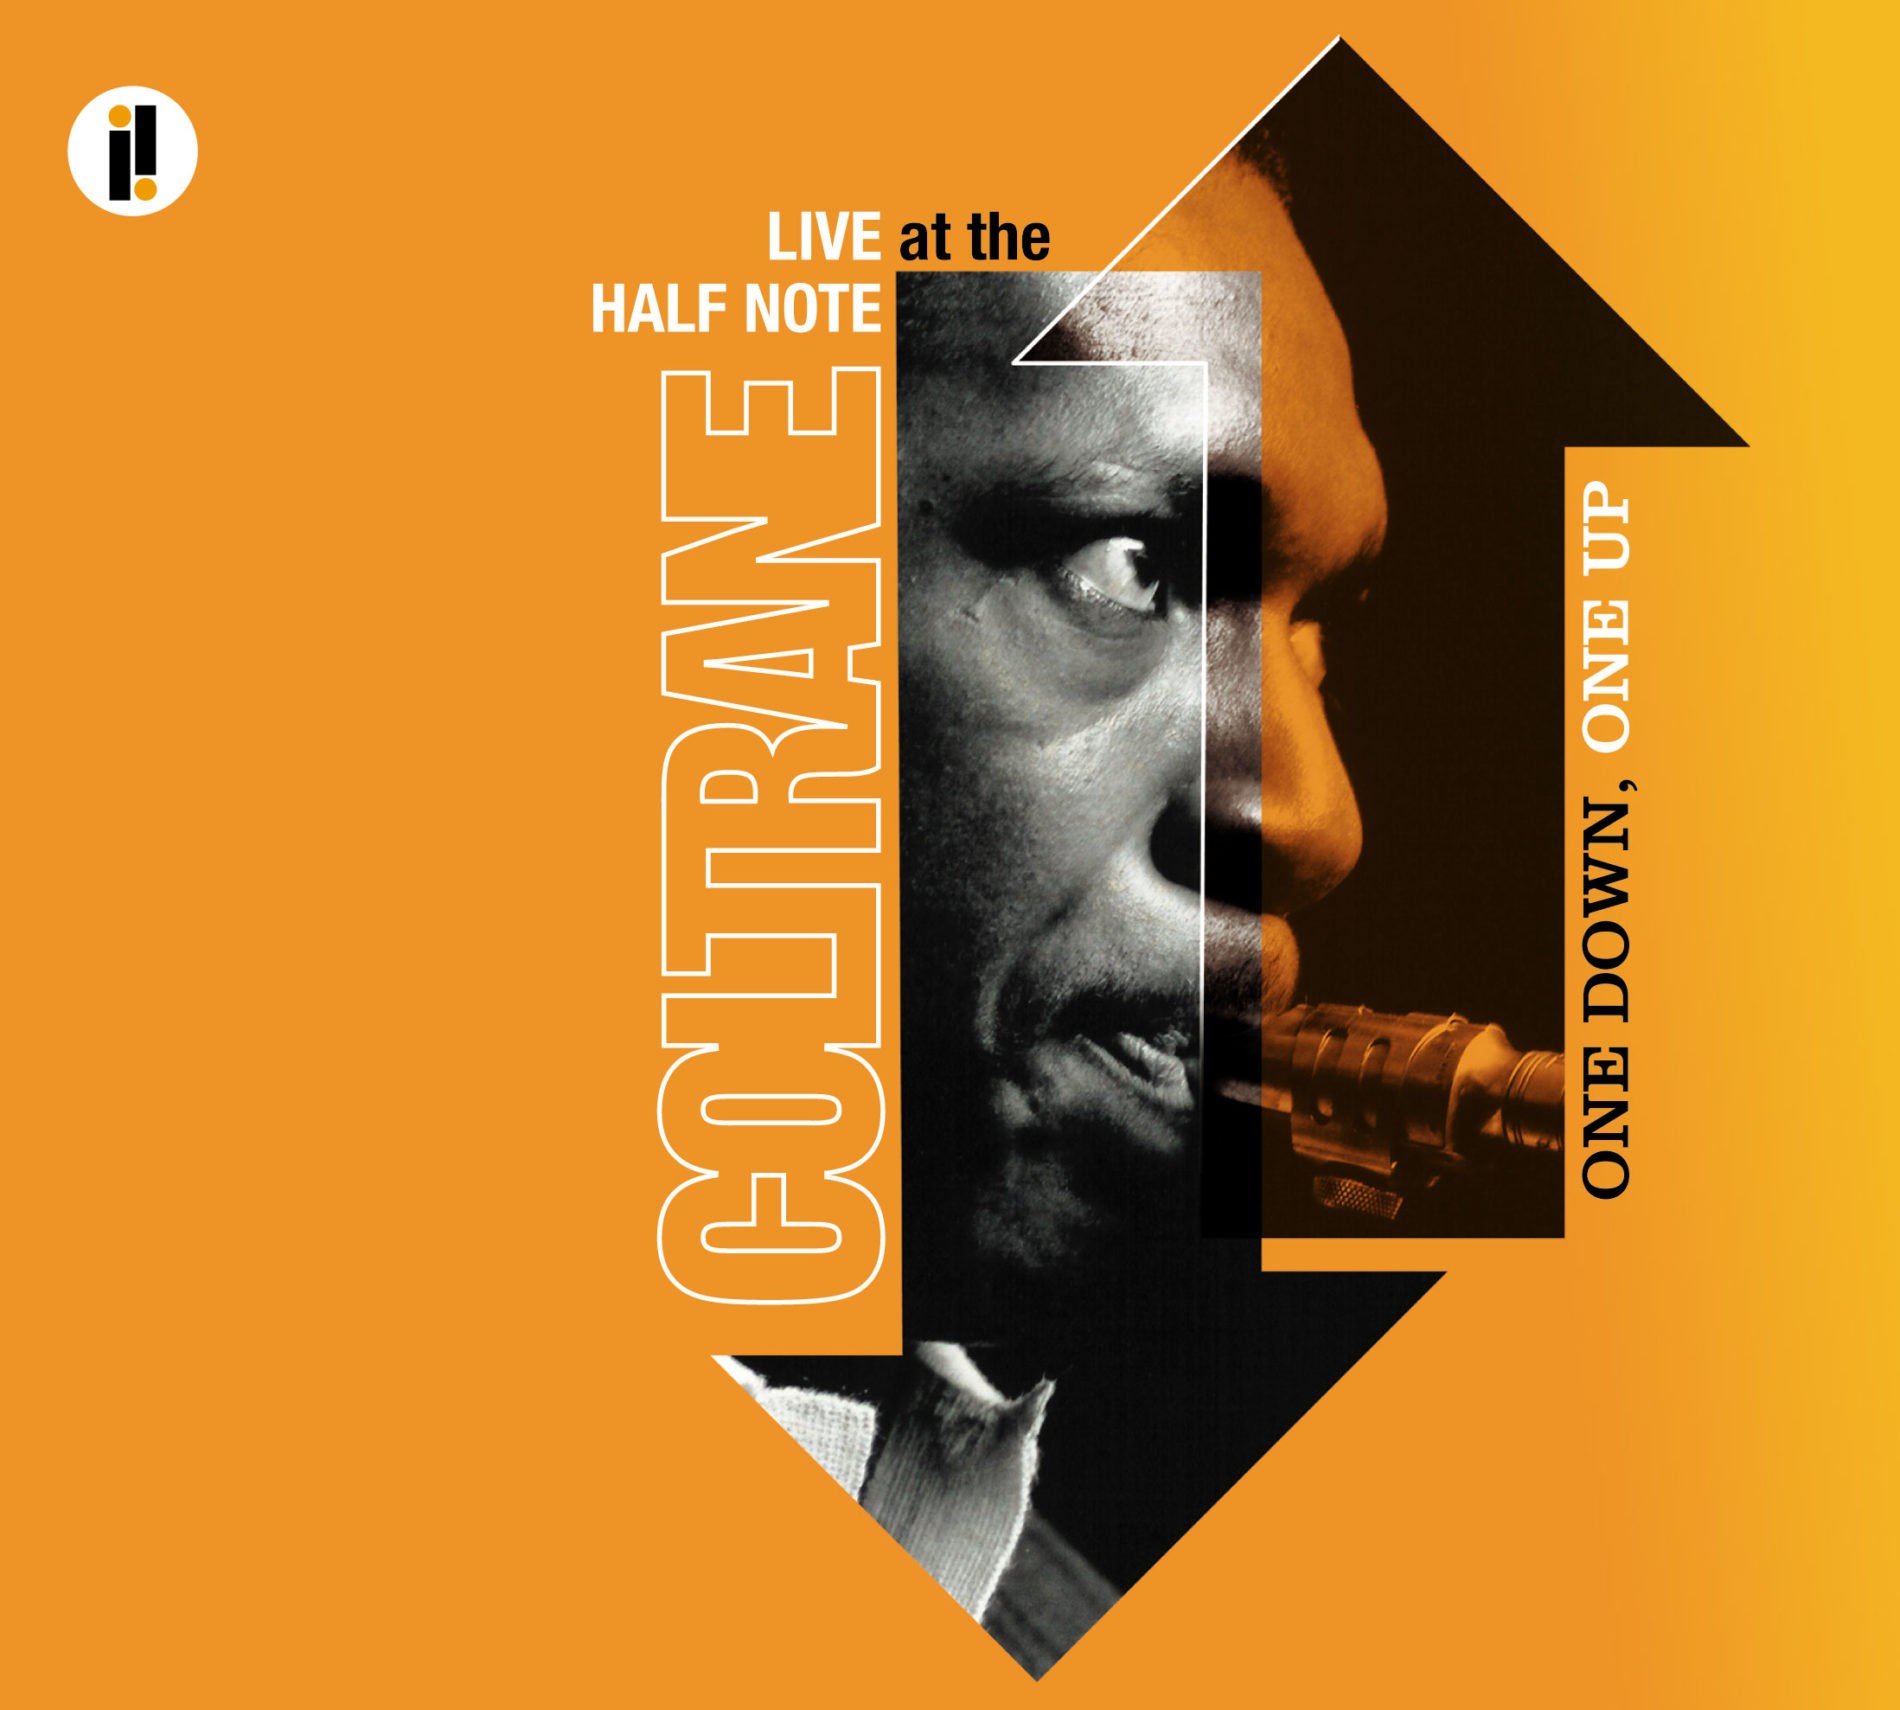 An album cover for John Coltrane.